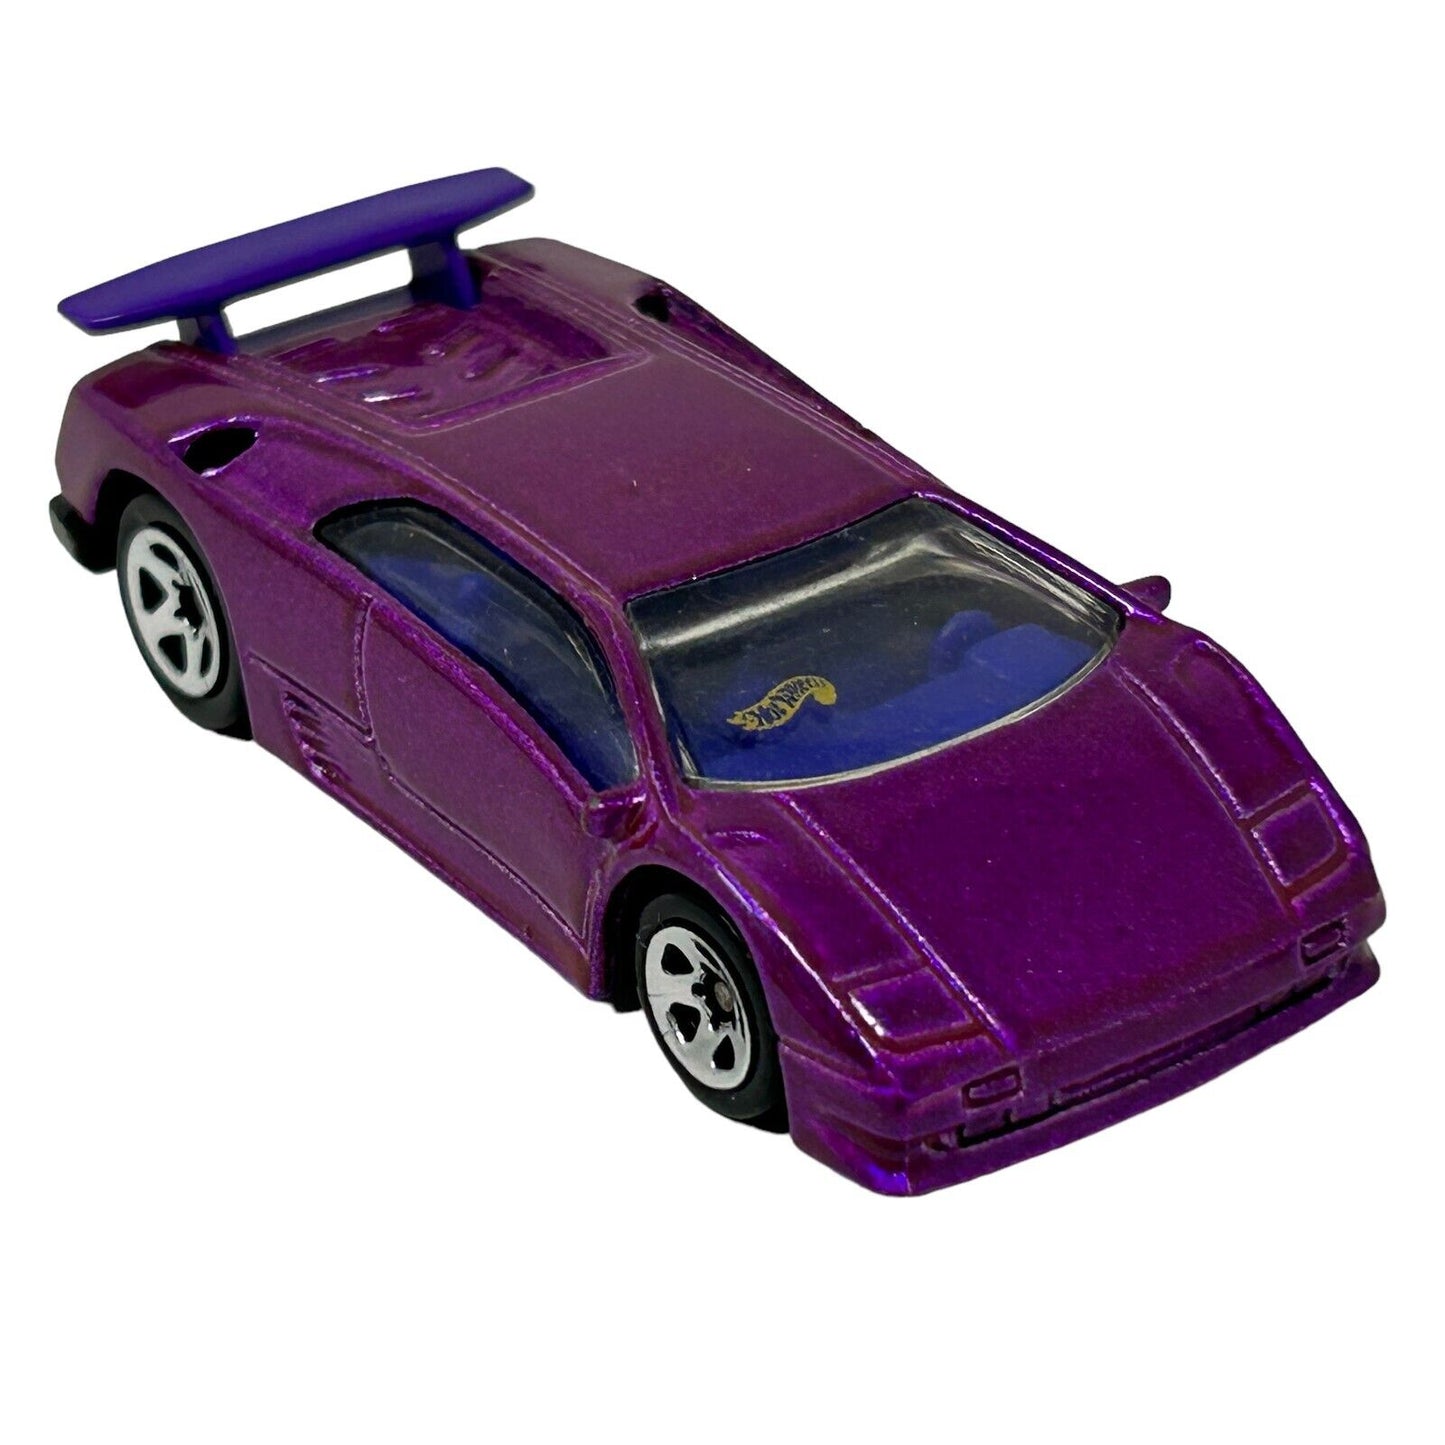 Lamborghini Diablo Hot Wheels Collectible Diecast Car Vintage 90s Purple Vehicle